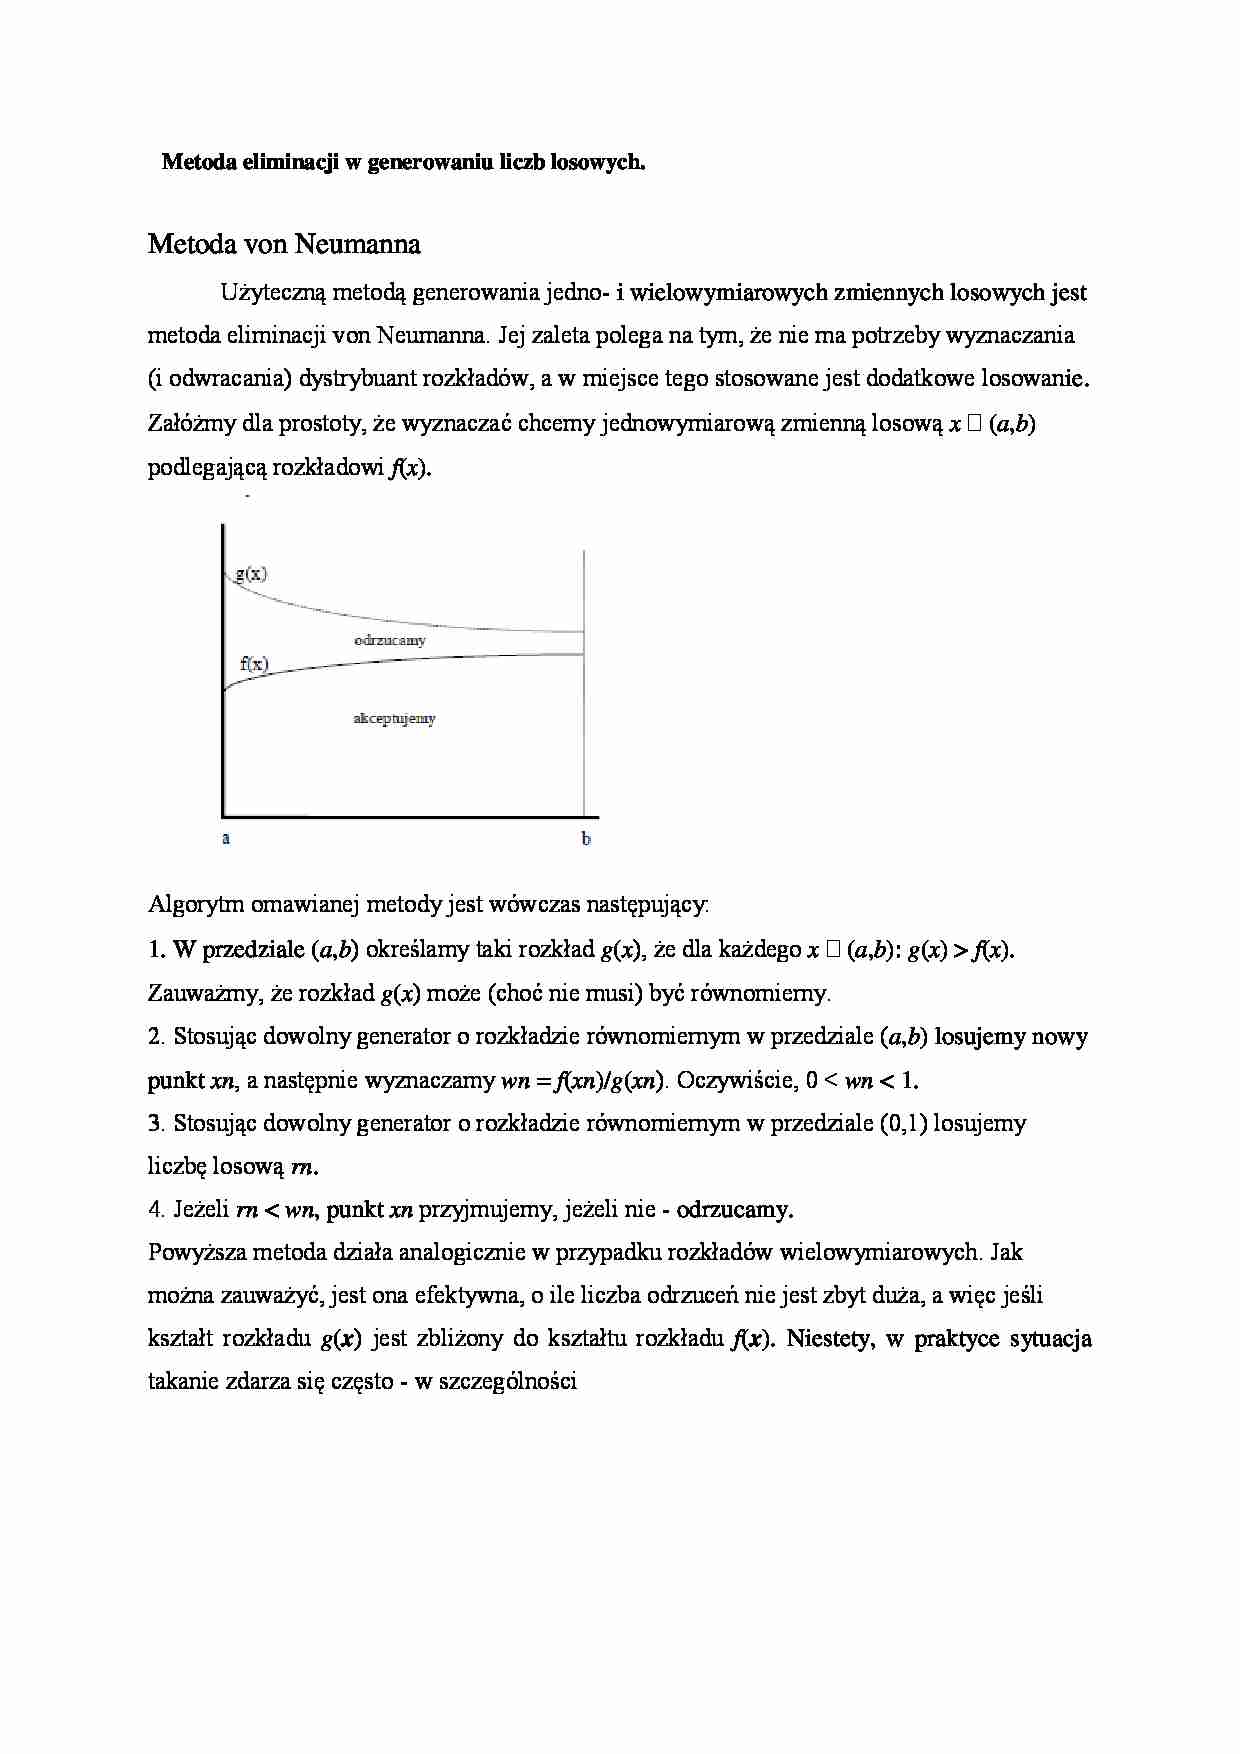 Metoda eliminacji w generowaniu liczb losowych - Metoda von Neumanna - strona 1